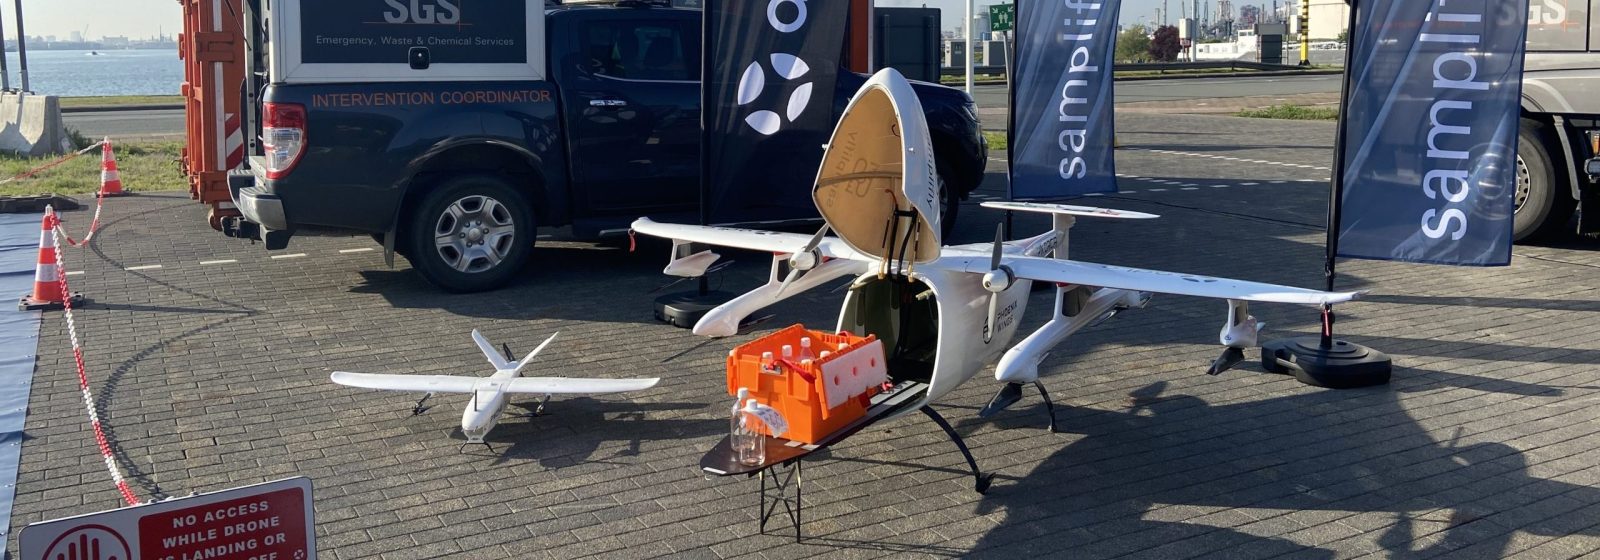 Vrachtdrone van het Antwerpse dronebedrijf ADLC